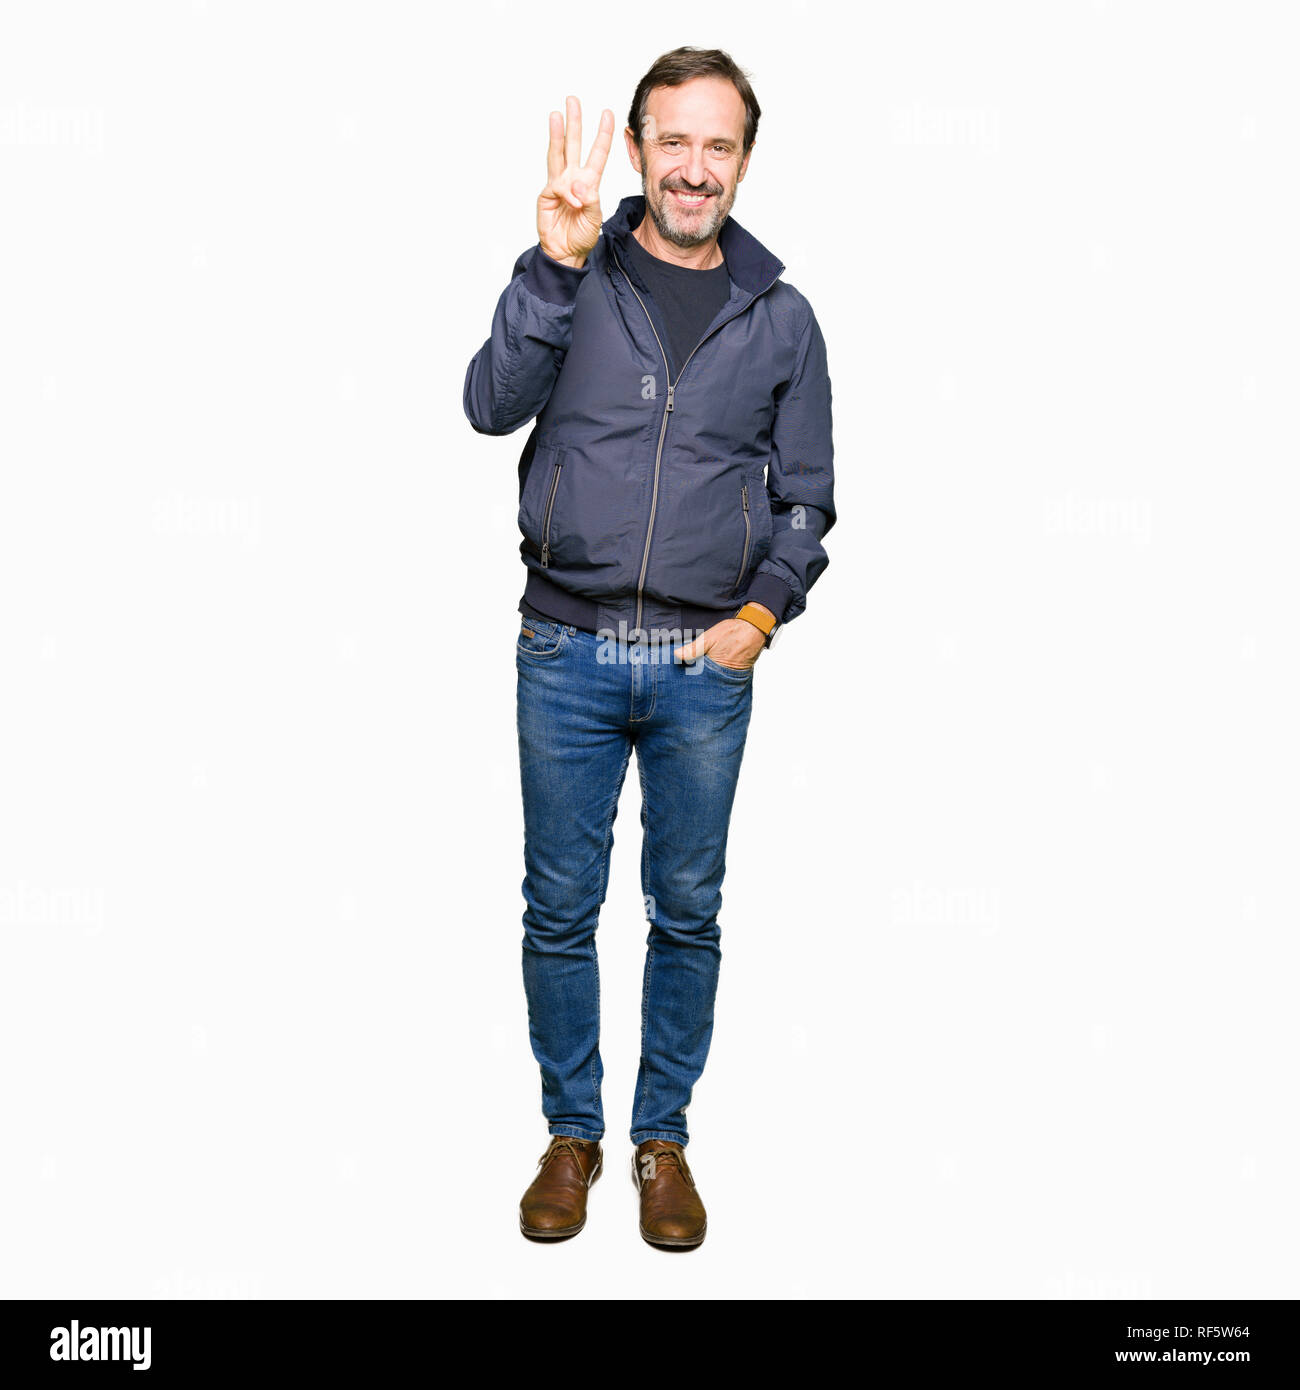 Mittleres Alter schöner Mann trägt eine Jacke angezeigt und zeigen mit den Fingern Nummer drei, während lächelte zuversichtlich und fröhlich. Stockfoto